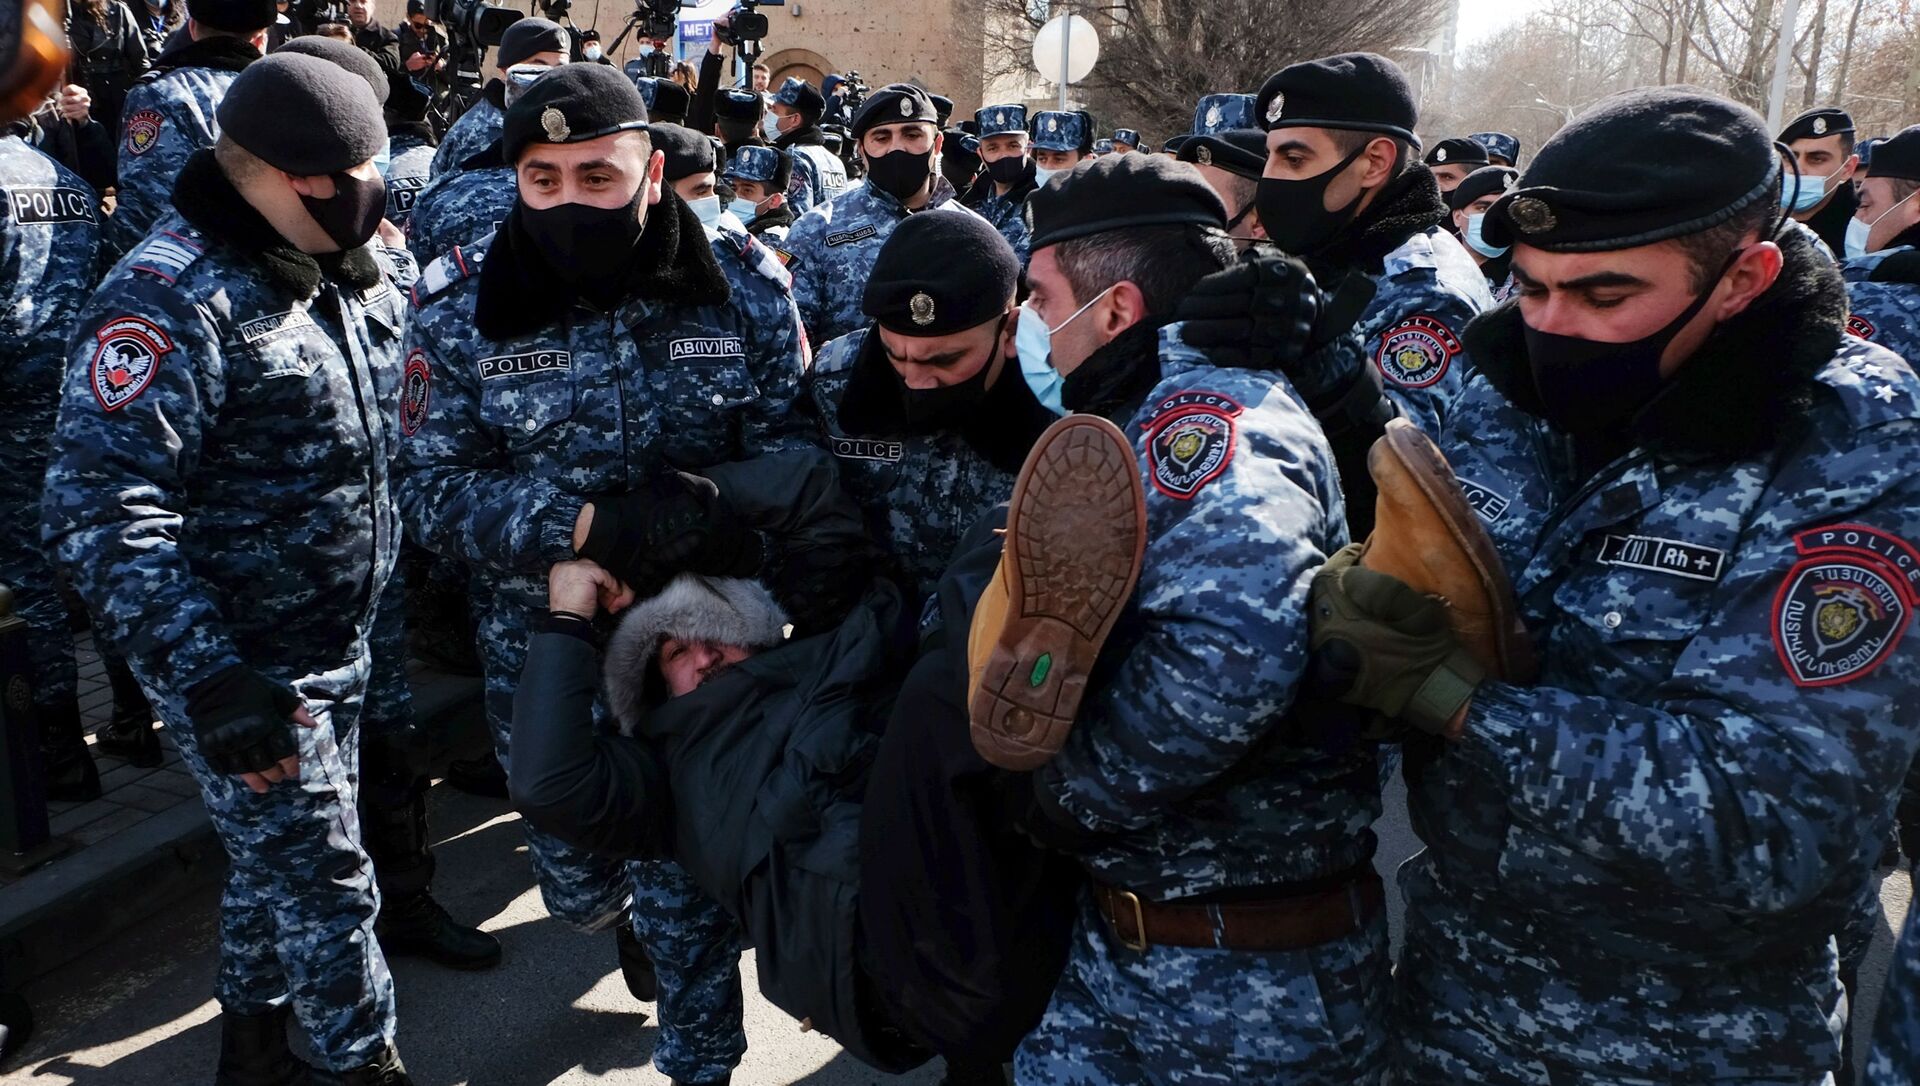 Сотрудники полиции задерживают участника акции протеста в Армении - Sputnik Таджикистан, 1920, 25.02.2021